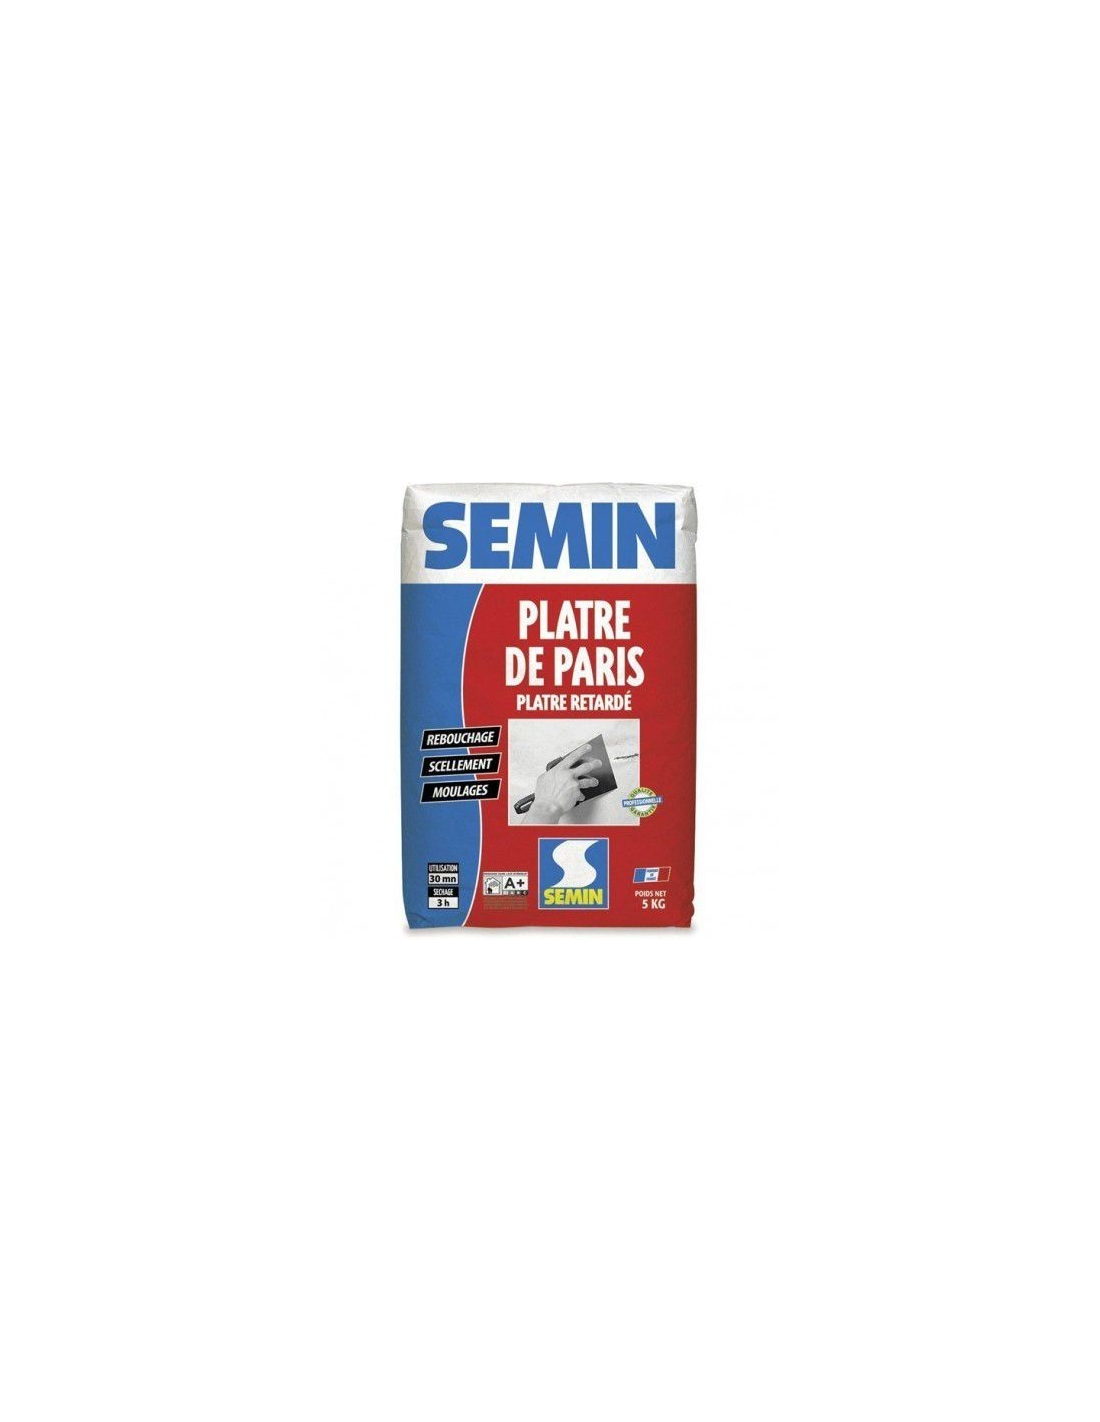 SEMIN Plâtre de Paris 5kg - SEMIN - - 72300175Générique